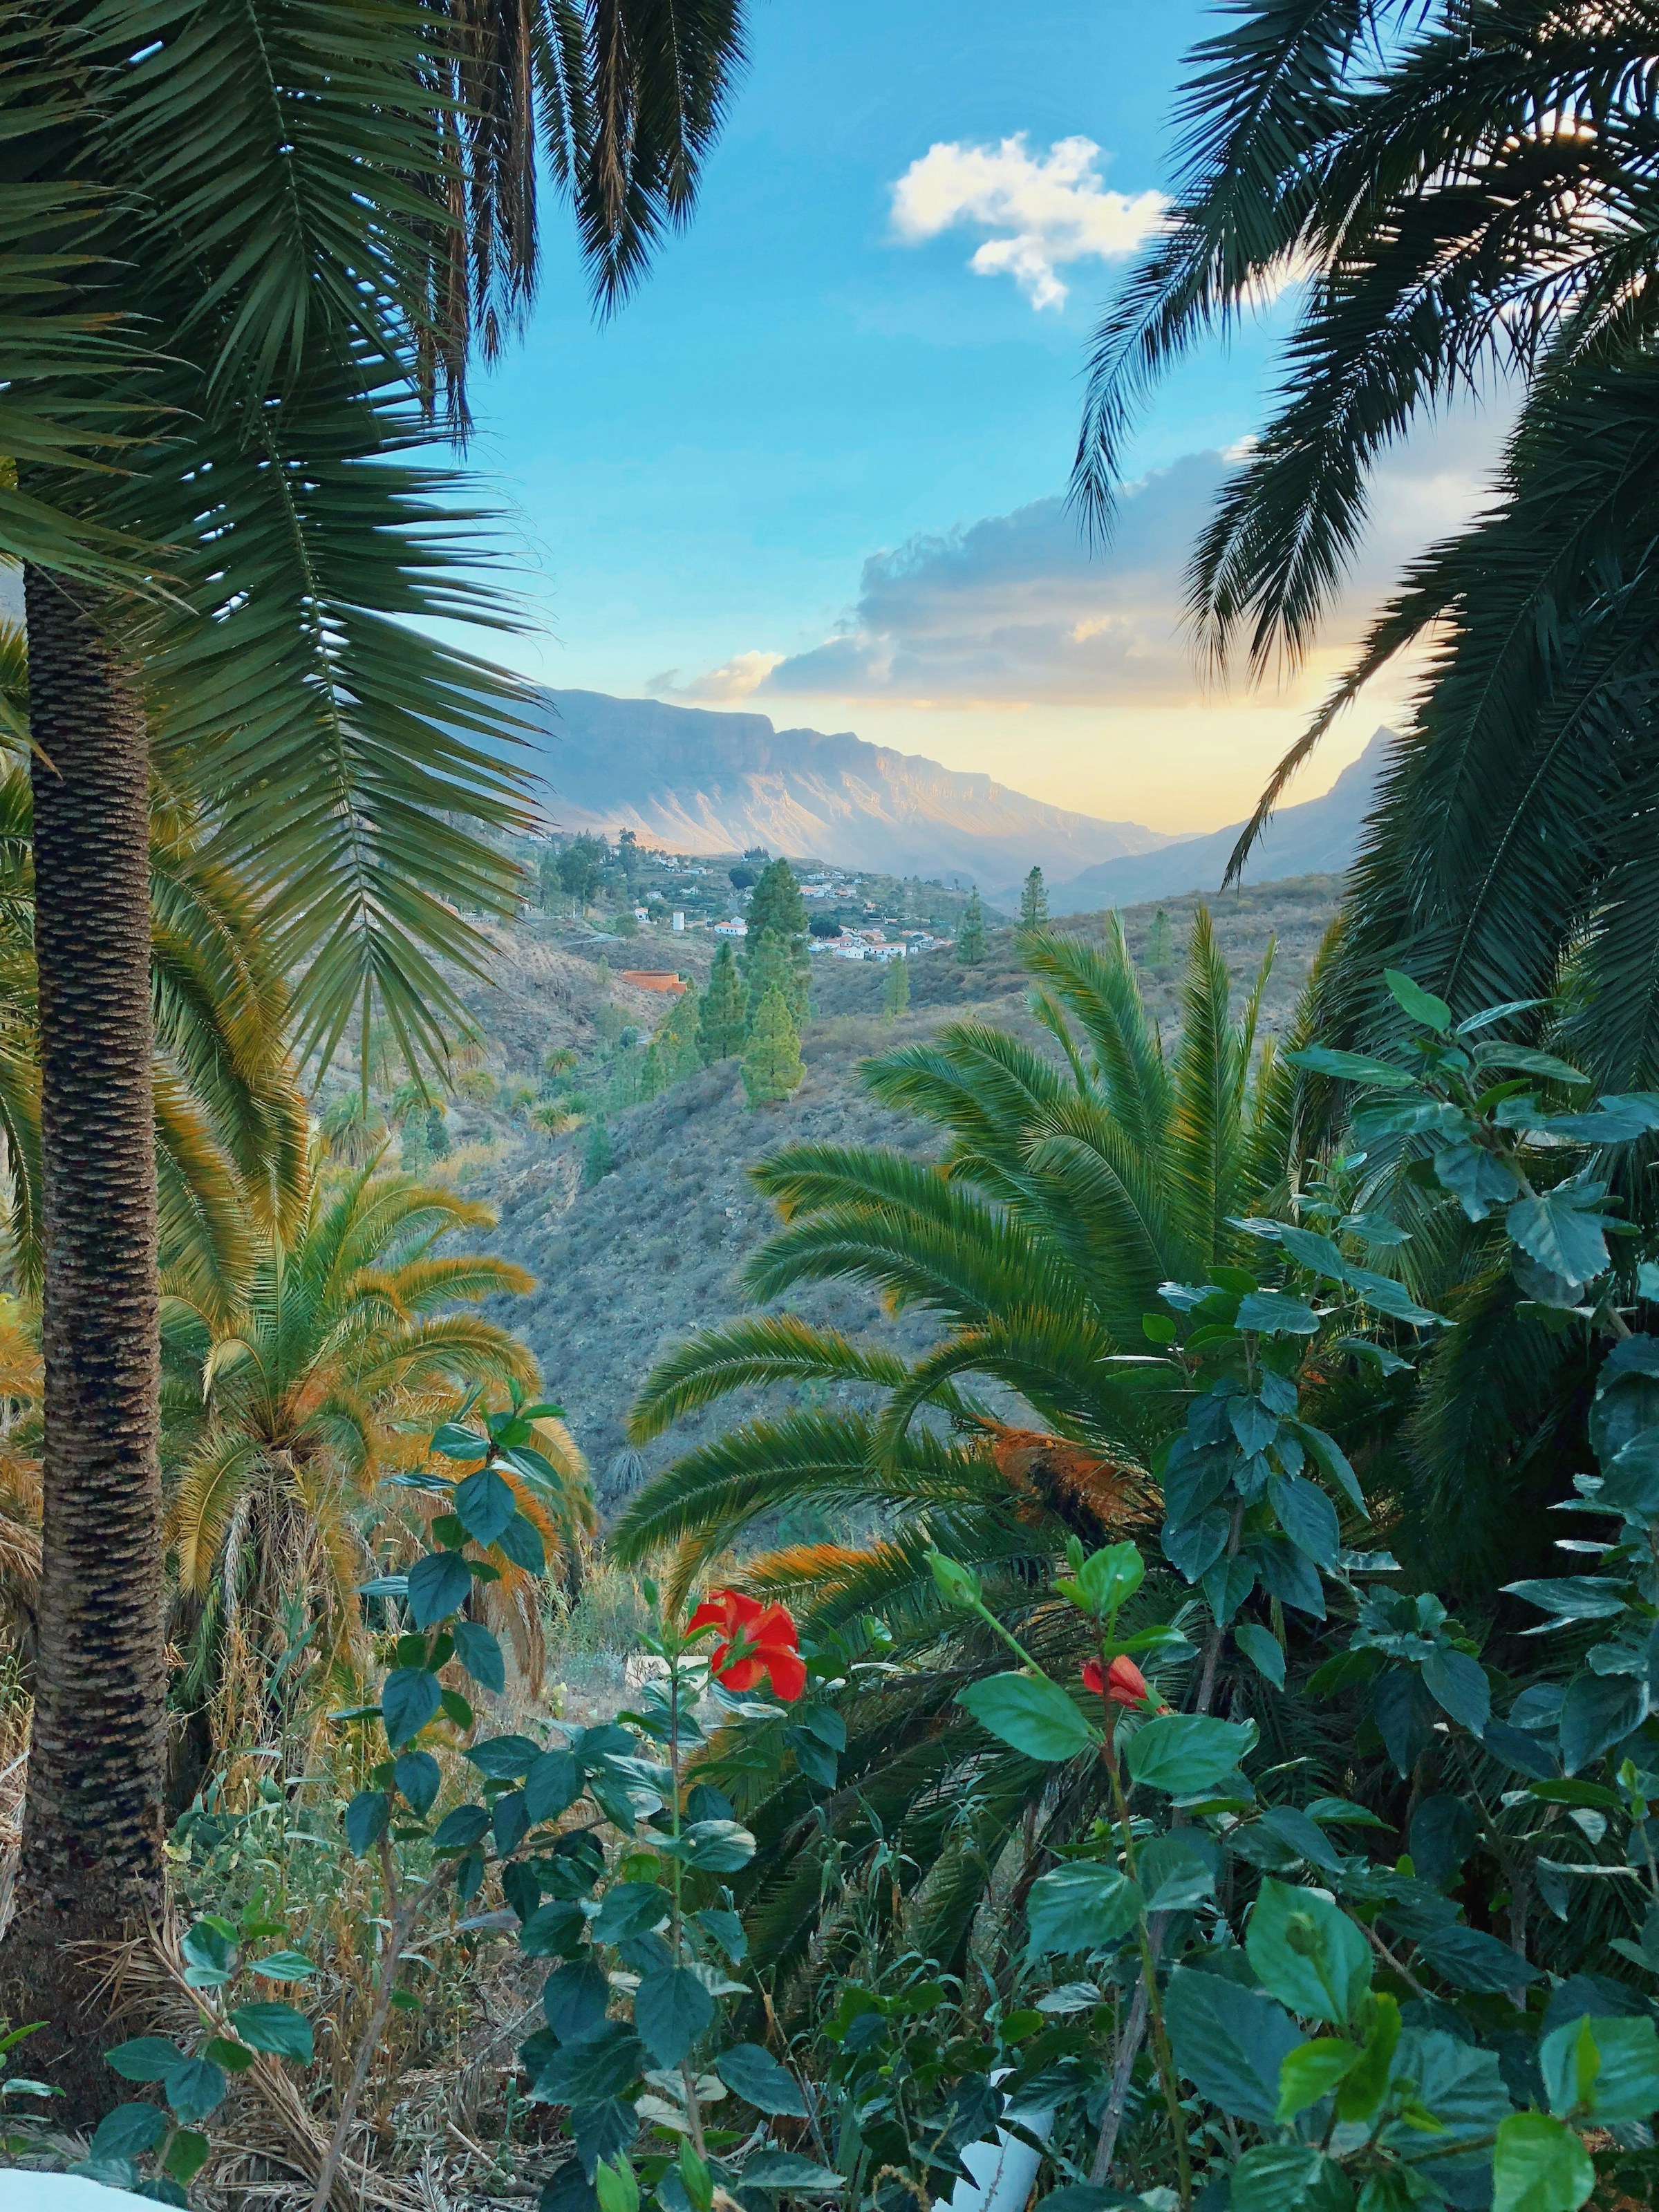 ropisk landskapsvy med frodiga palmer i förgrunden och berg i bakgrunden vid solnedgång på Gran Canaria.